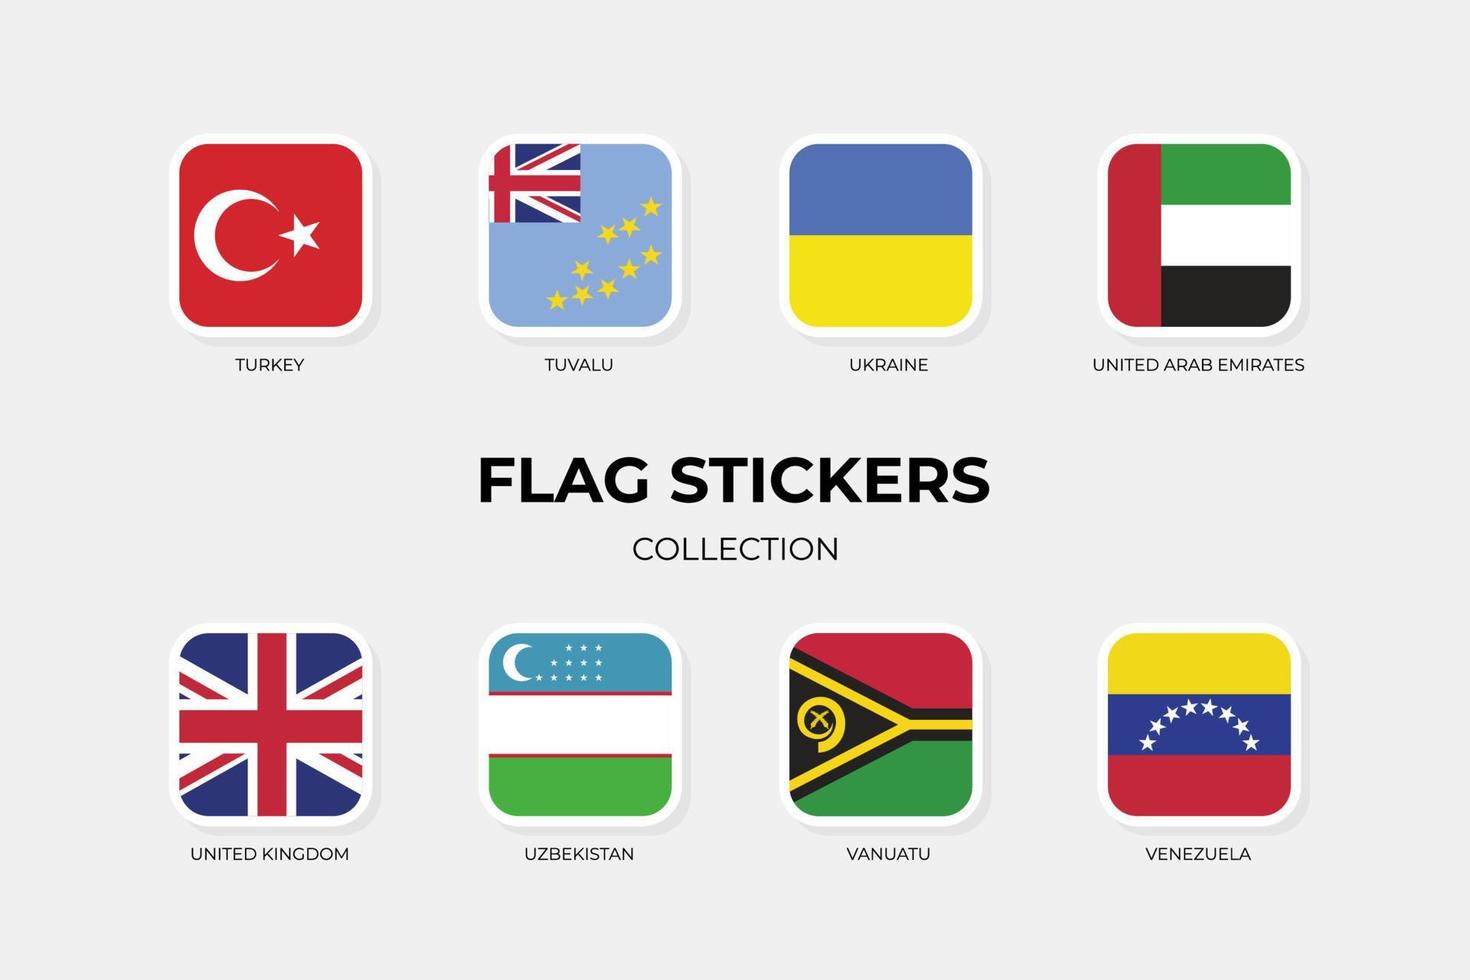 adesivos de bandeira da Turquia, Tuvalu, Ucrânia, Emirados Árabes Unidos, Reino Unido, Uzbequistão, Vanuatu, Venezuela vetor